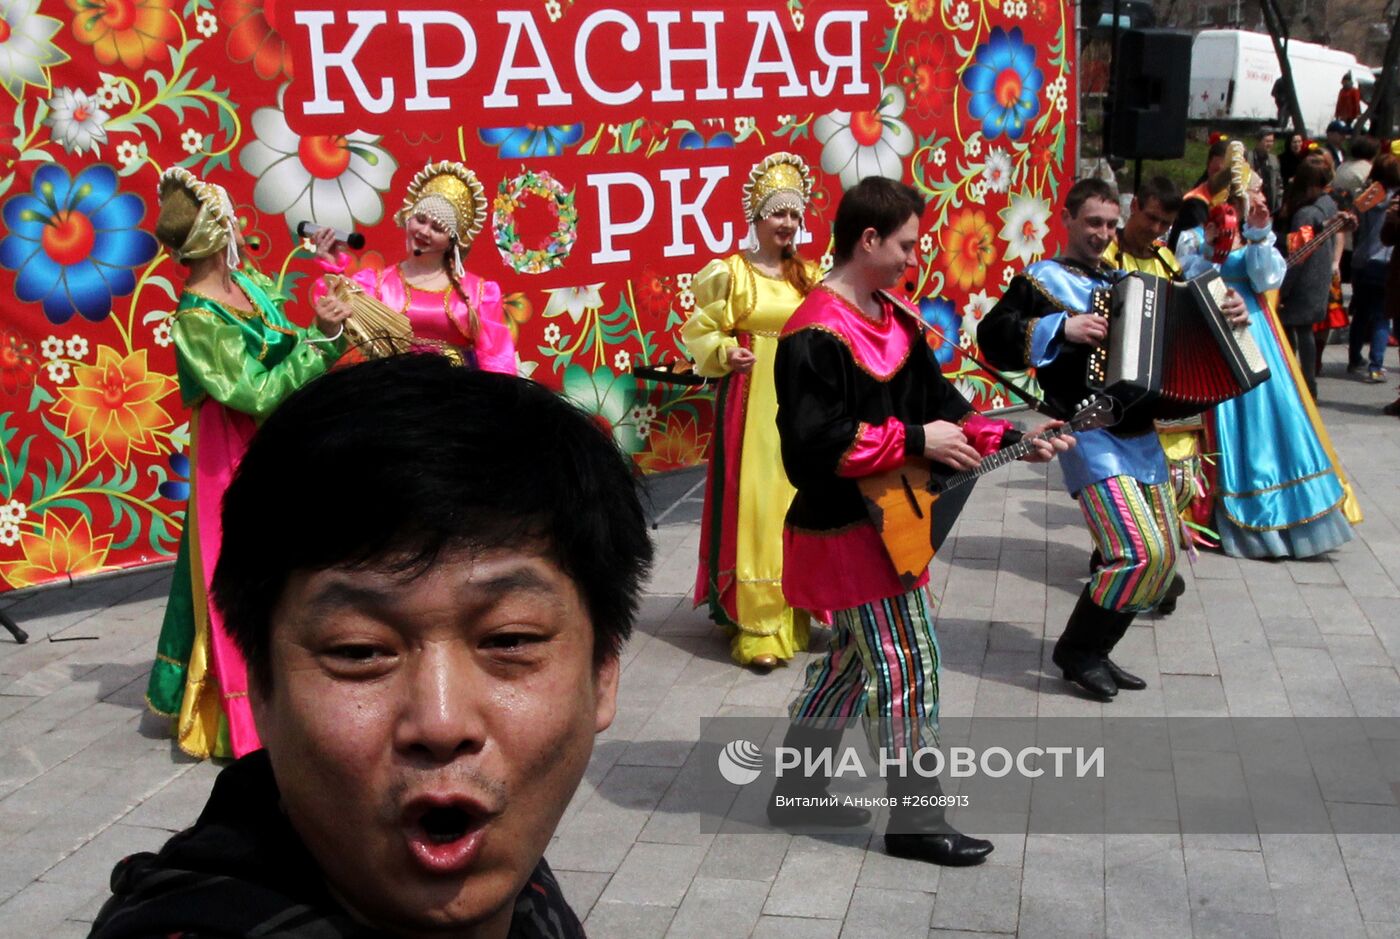 Праздник "Красная горка" во Владивостоке